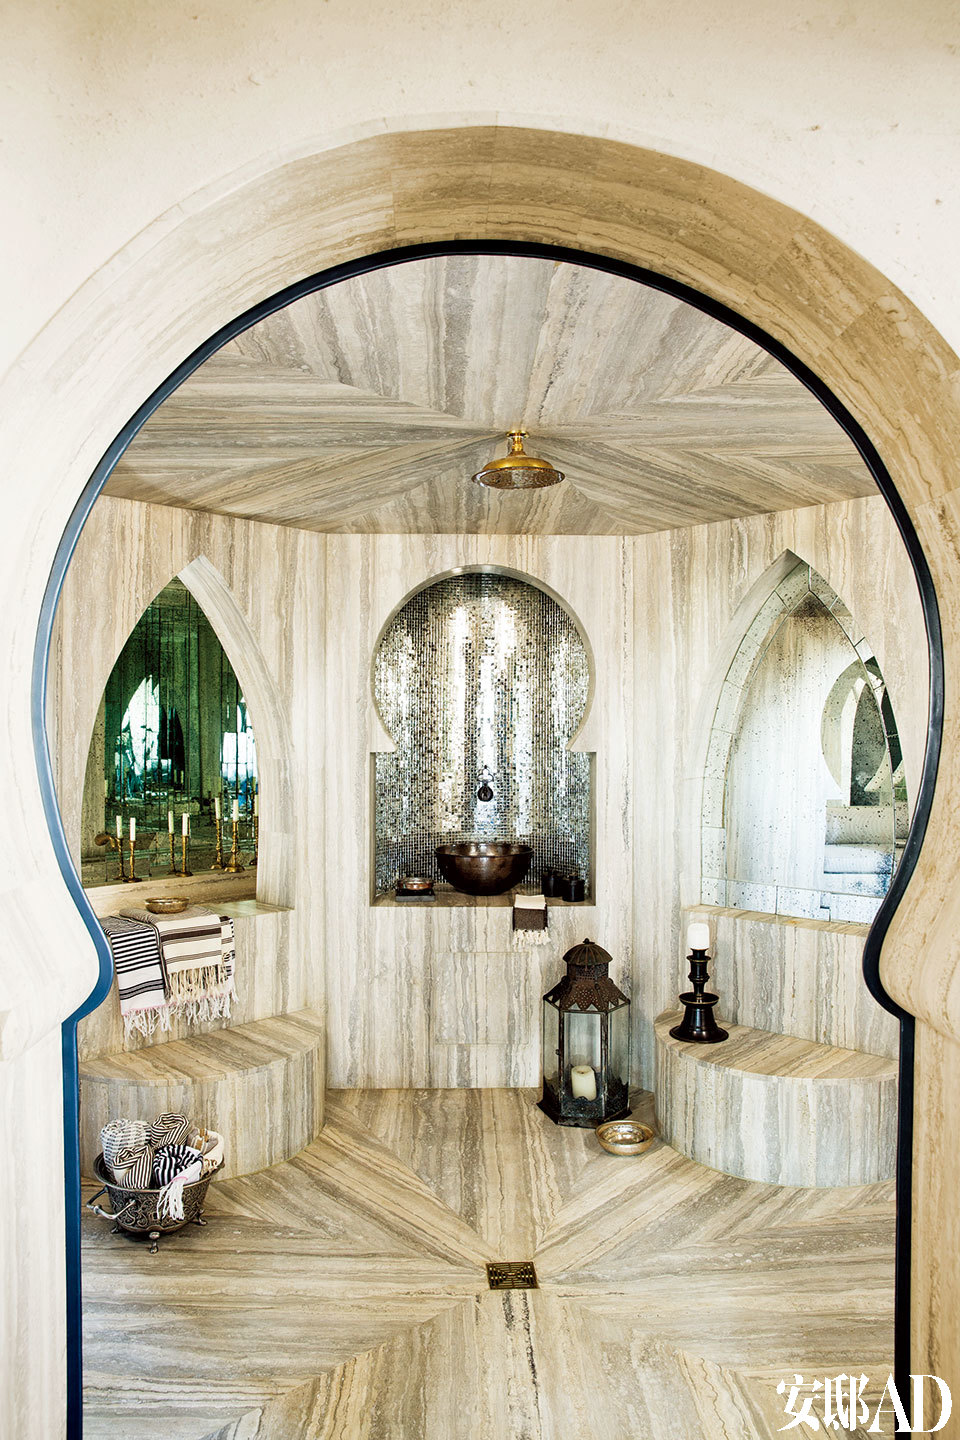 让人眼花缭乱的土耳其风格浴室中贴着脉纹的土耳其大理石，几个壁龛中铺设着镜面马赛克，花洒来自Waterworks。